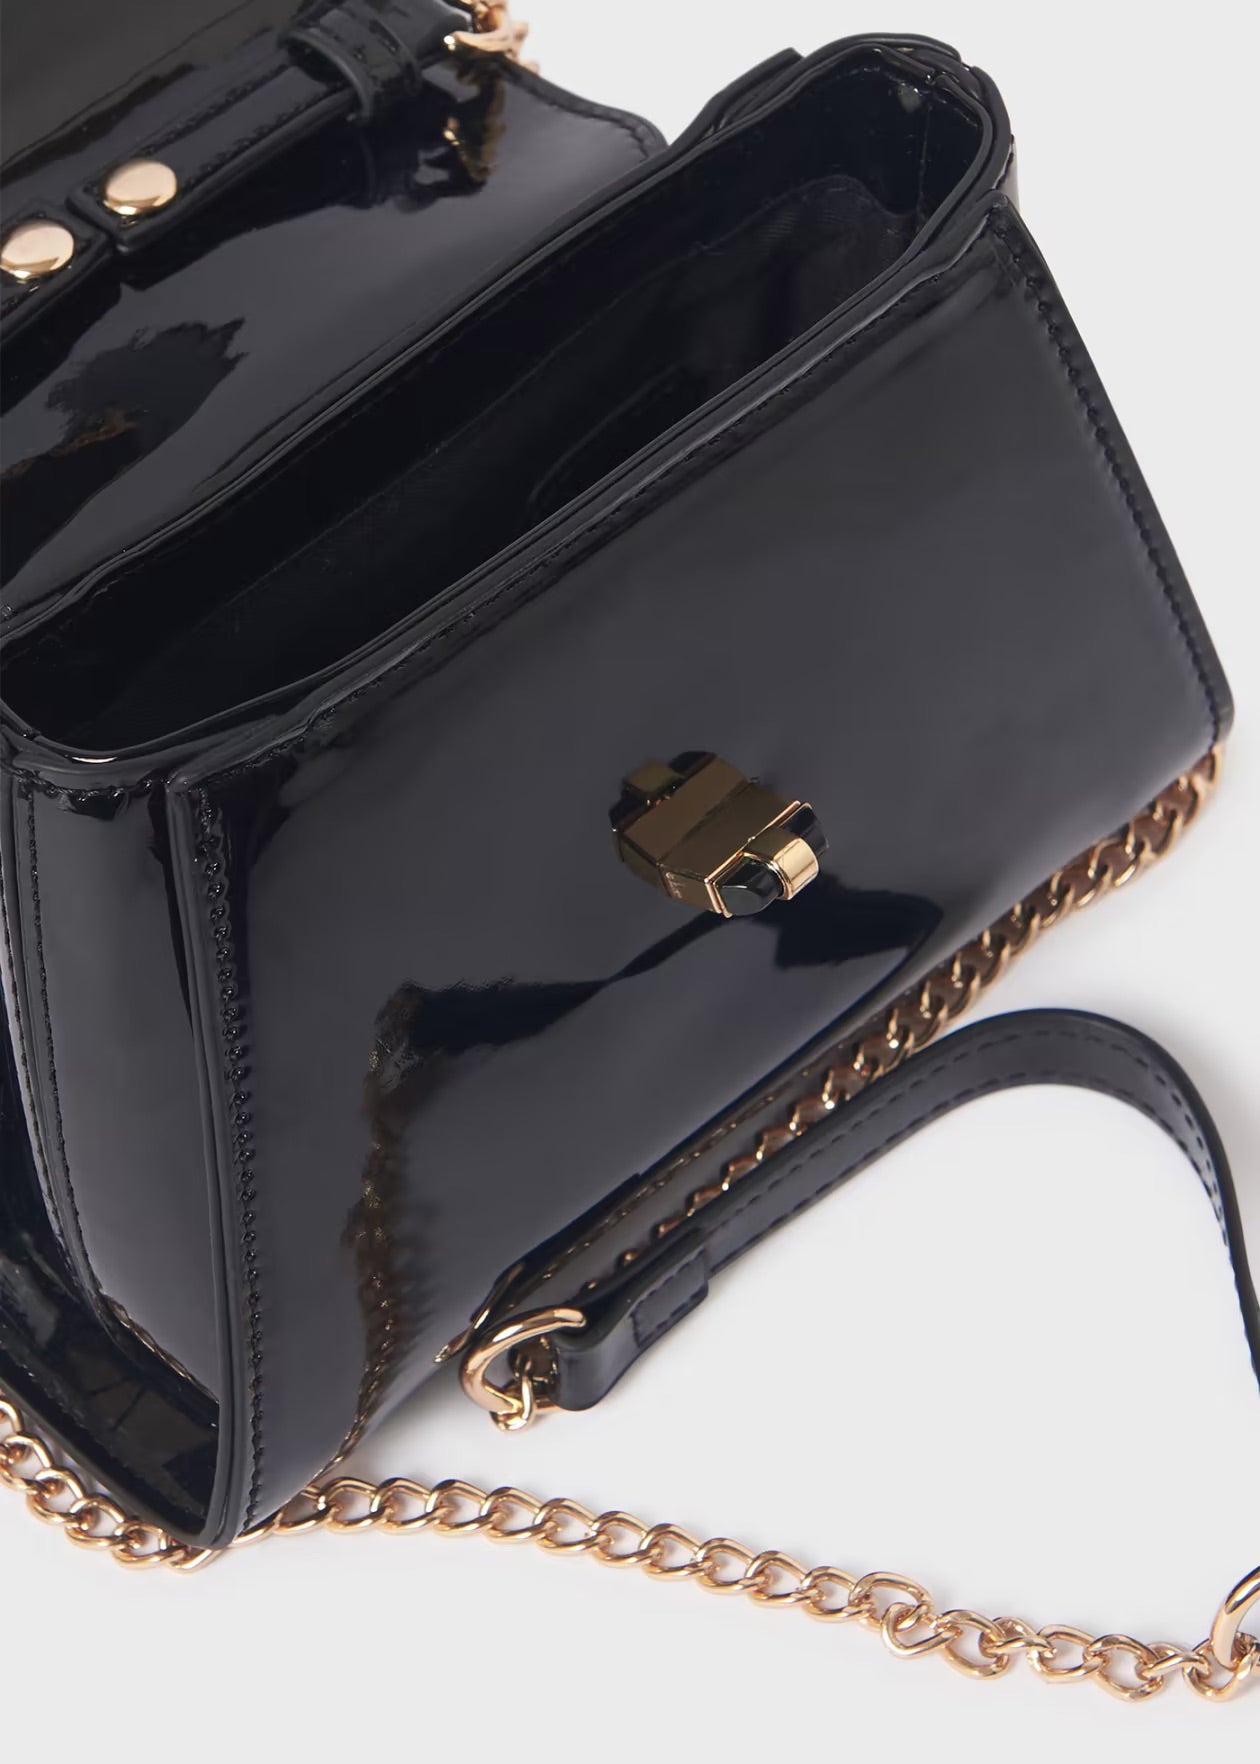 Tiffany Patent Handbag - Classic Black from Vivien of Holloway